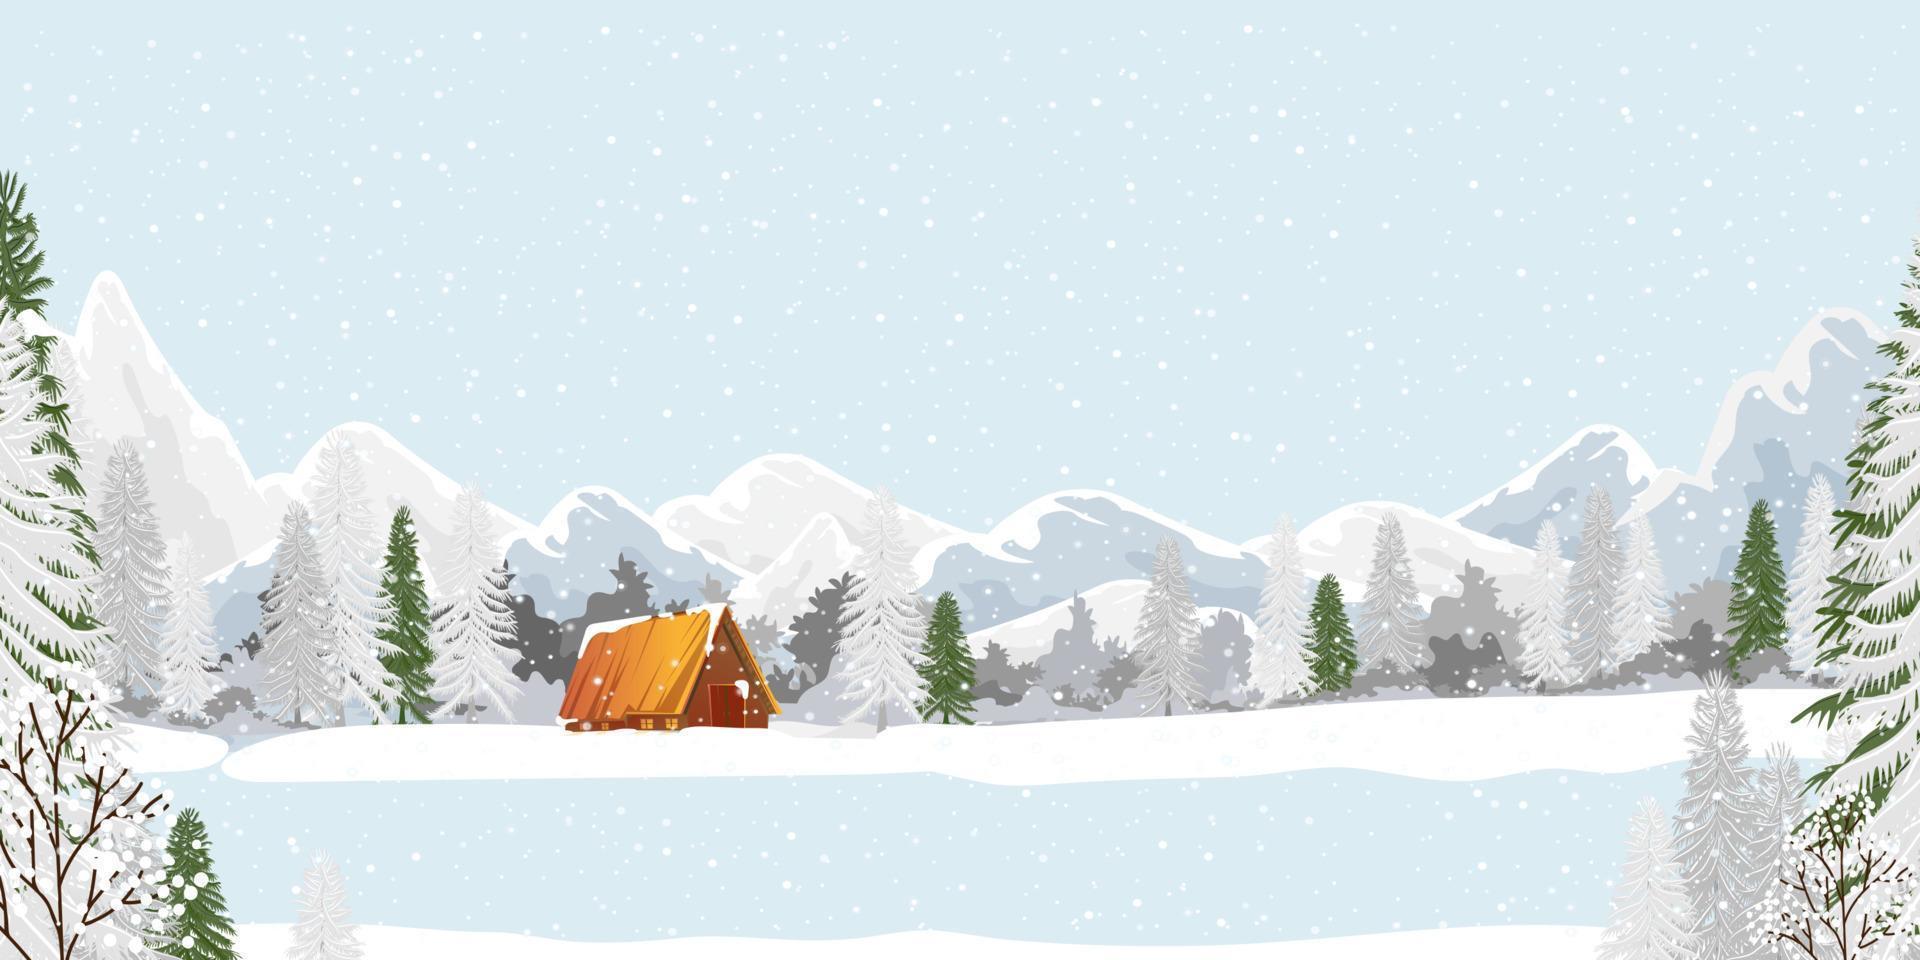 vinter- landskap med snöar beläggning skog tall träd och bergen på blå himmel, panorama- vinter- sagoland med bruka hus i by, vektor horisontell baner för jul eller ny år bakgrund